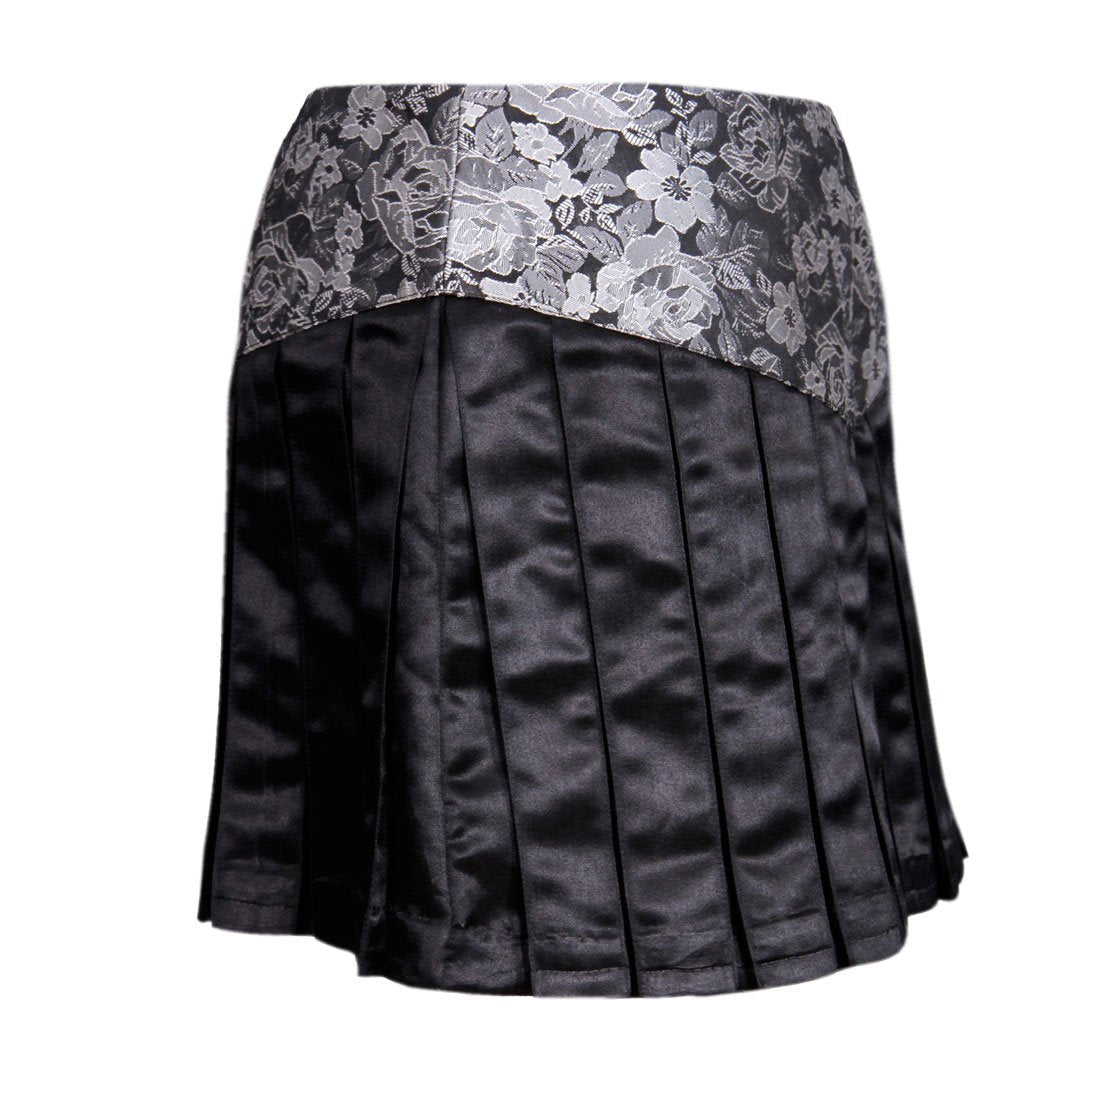 Gwyneira Brocade Skirt - Corset Revolution